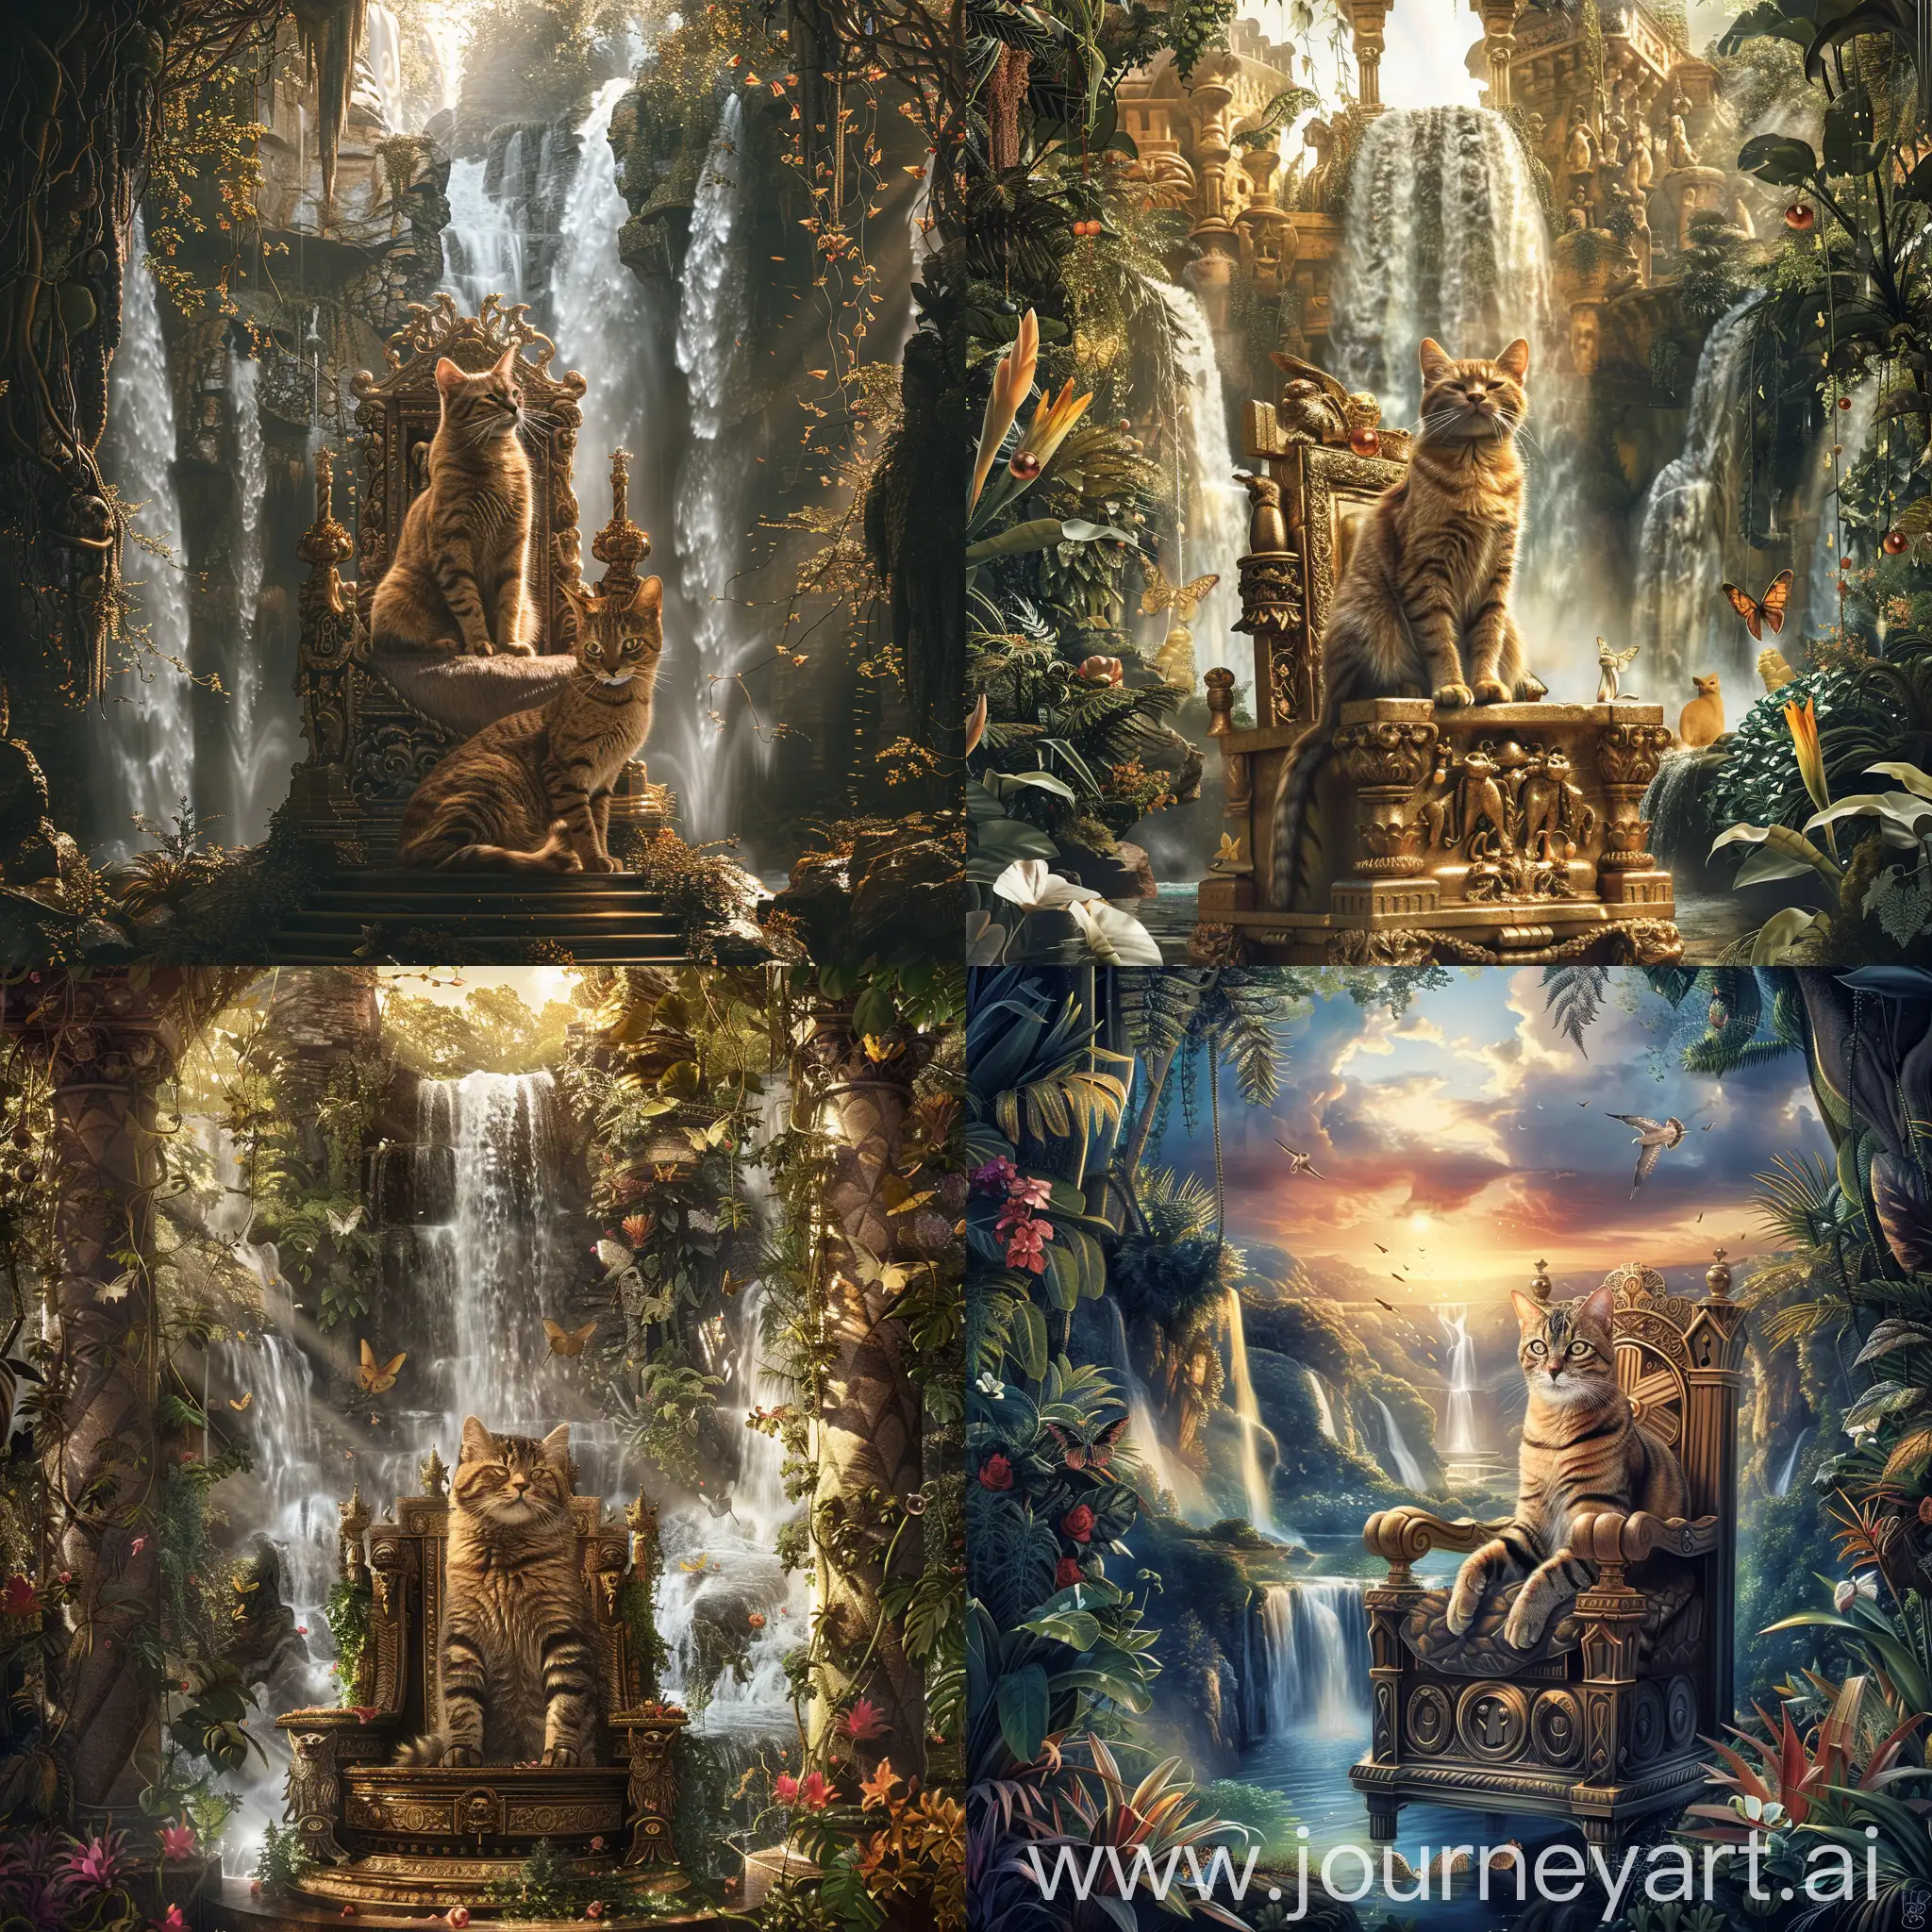 король котов сидит на троне фантастический мир,водопады,hdr,fantasy,botanical,многослойно,граттаж, высокое разрешение, высокая детализация, в стиле Дали